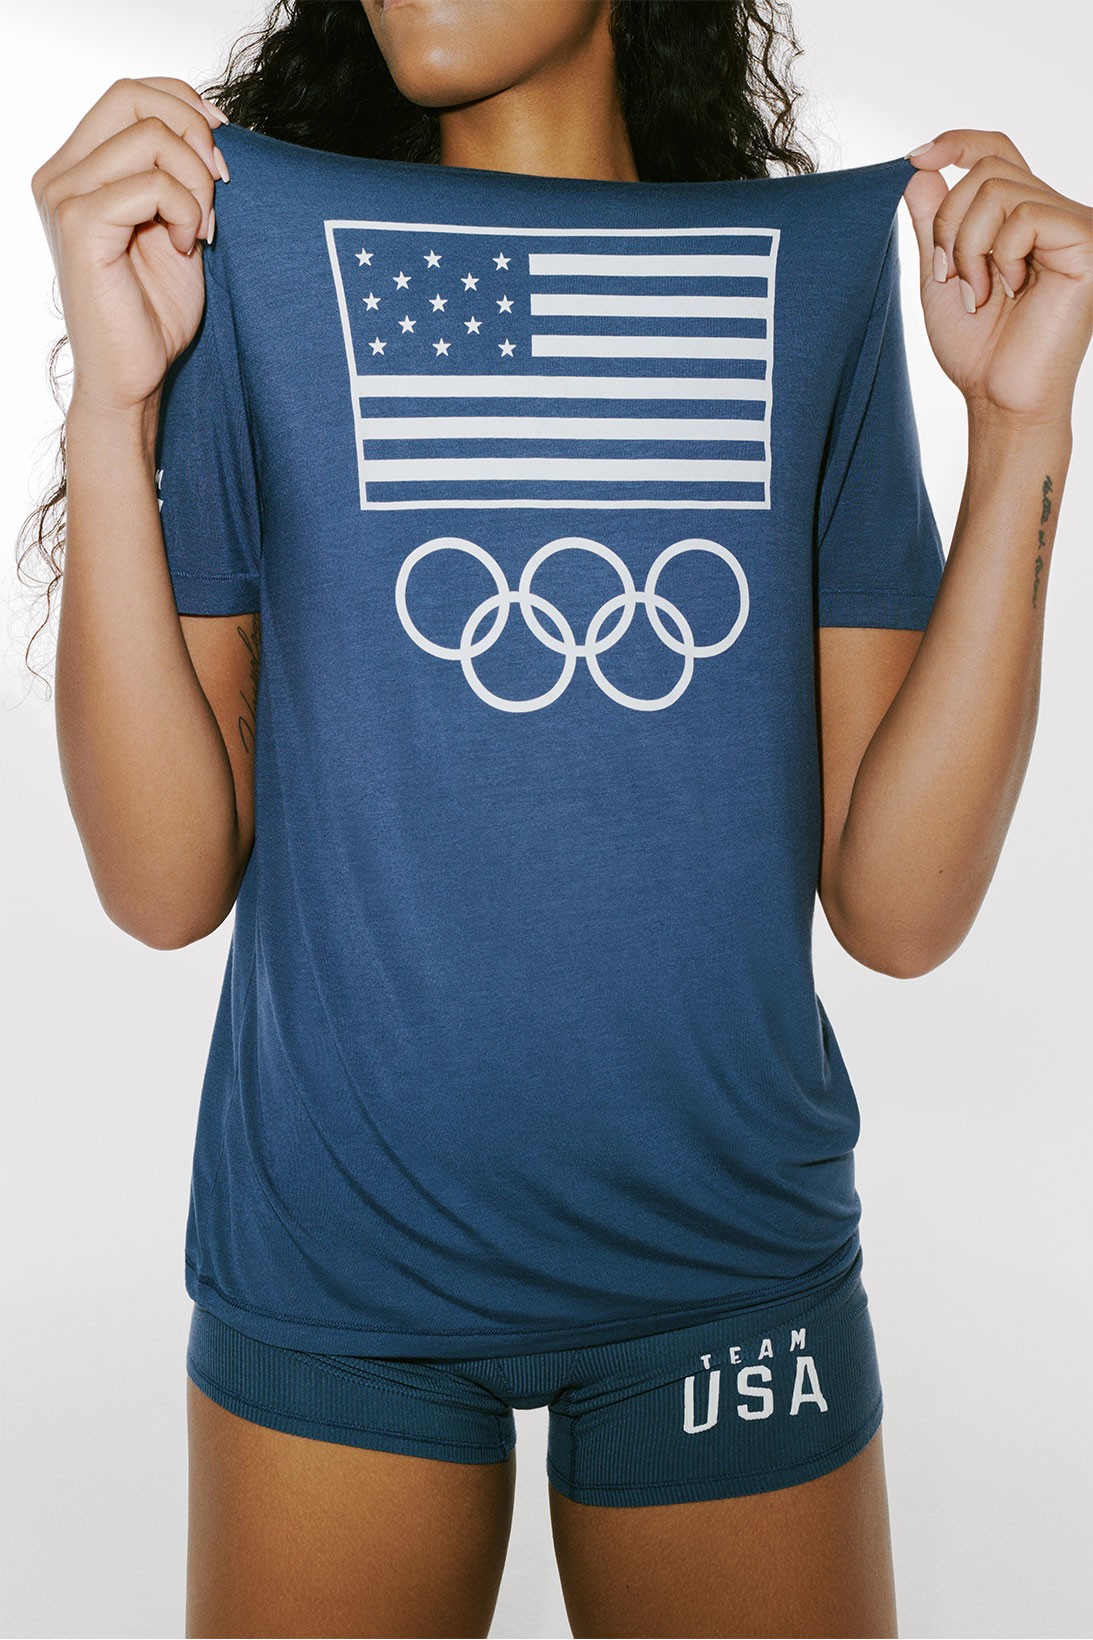 Спортсменки из олимпийской сборной США получат комплекты белья от Skims Ким Кардашьян (фото 3)